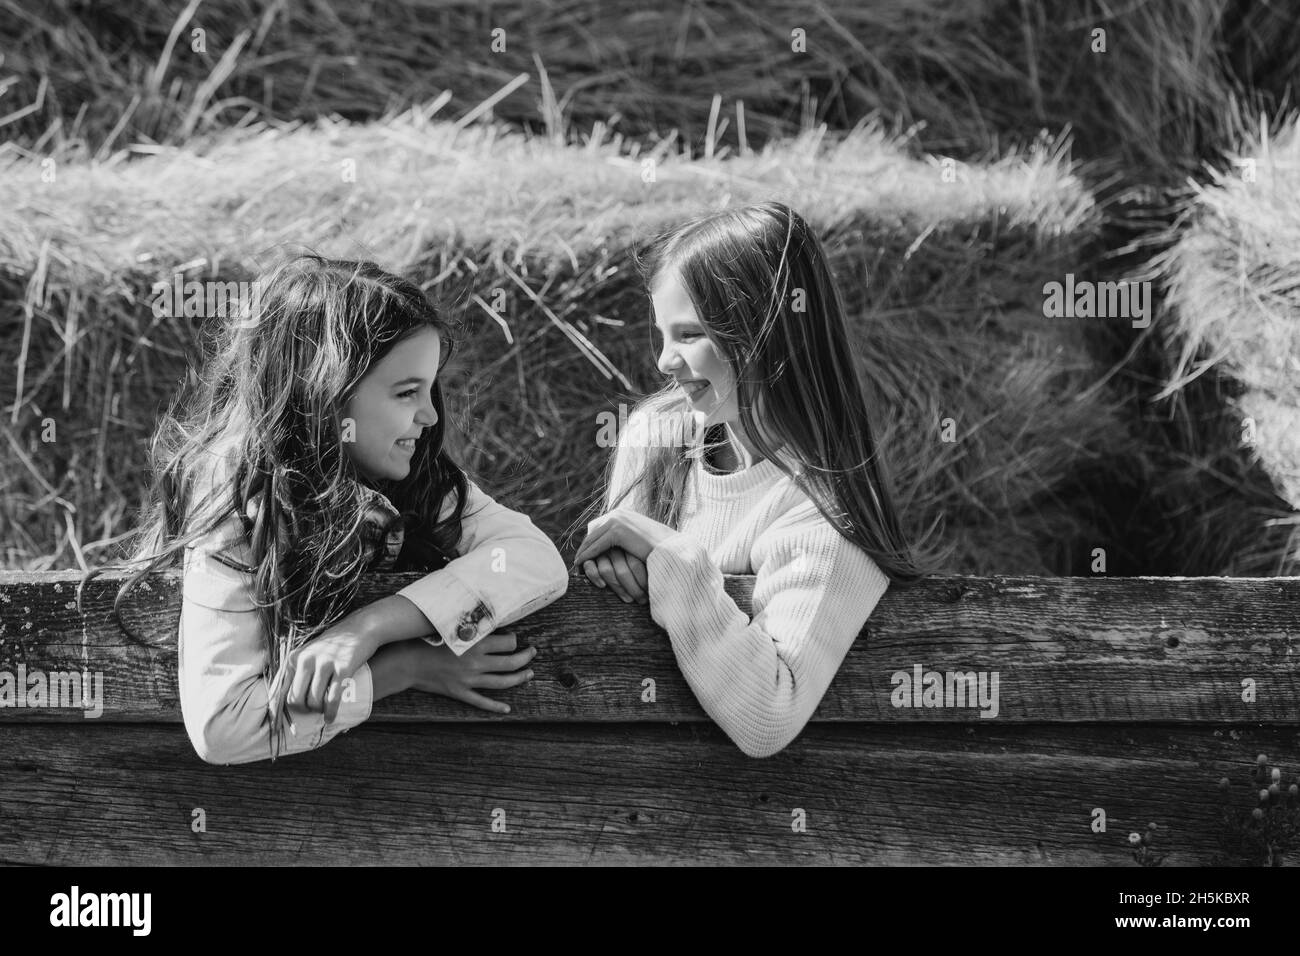 Imagen en blanco y negro de dos hermanas jóvenes que se miran unas a otras mientras se apoyan en un riel de madera con fardos de heno en el fondo Foto de stock